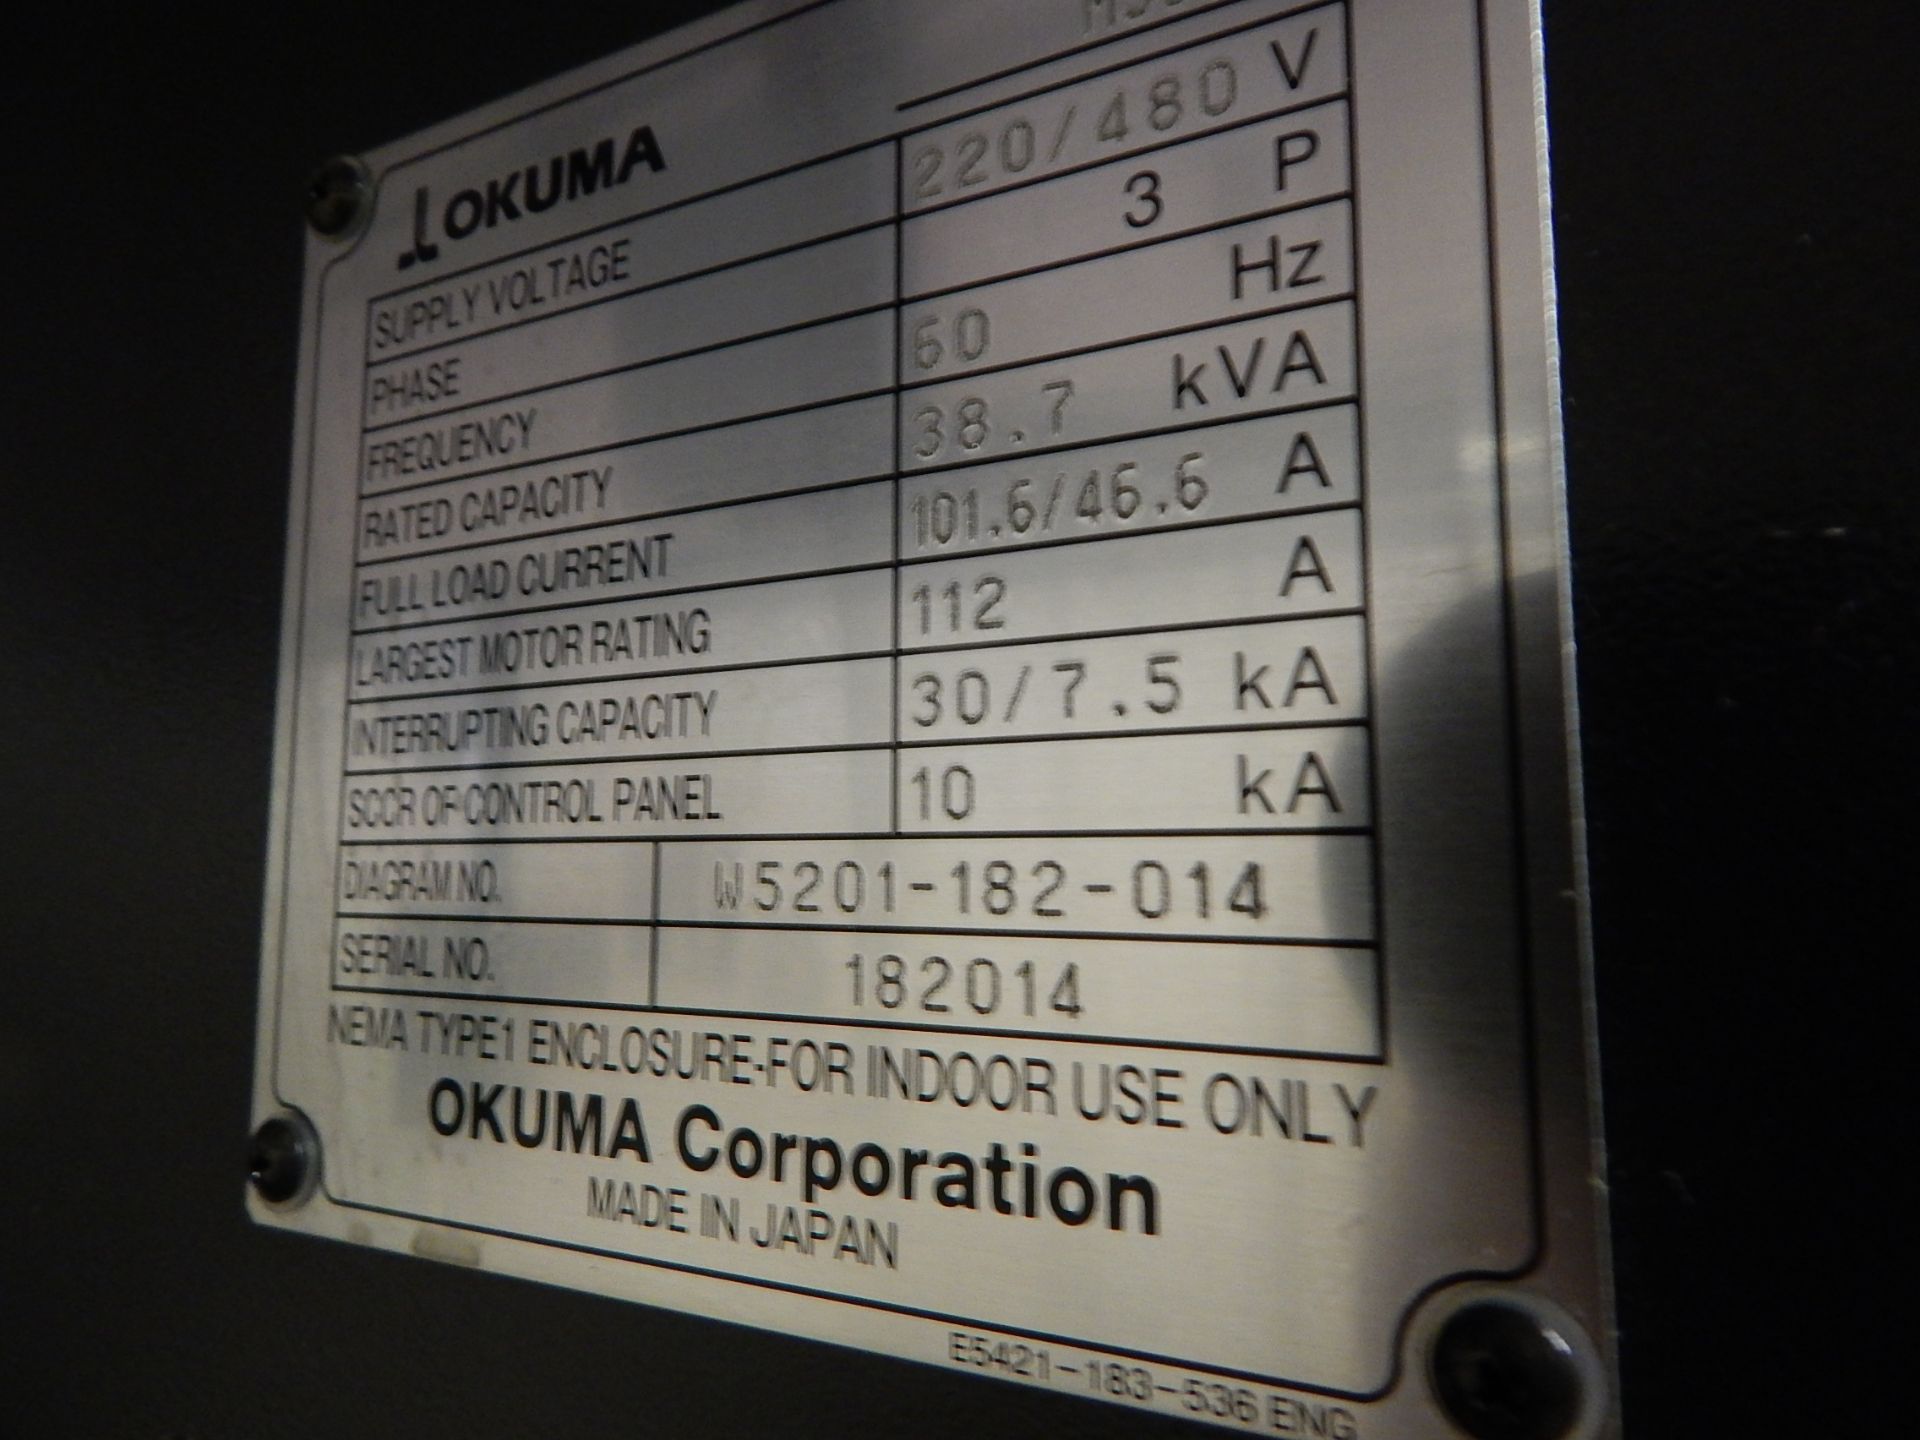 Okuma Model Genos M560V CNC Vertical Machining Center, s/n 182014, New 2014, Okuma OSP-P300M CNC - Image 6 of 16